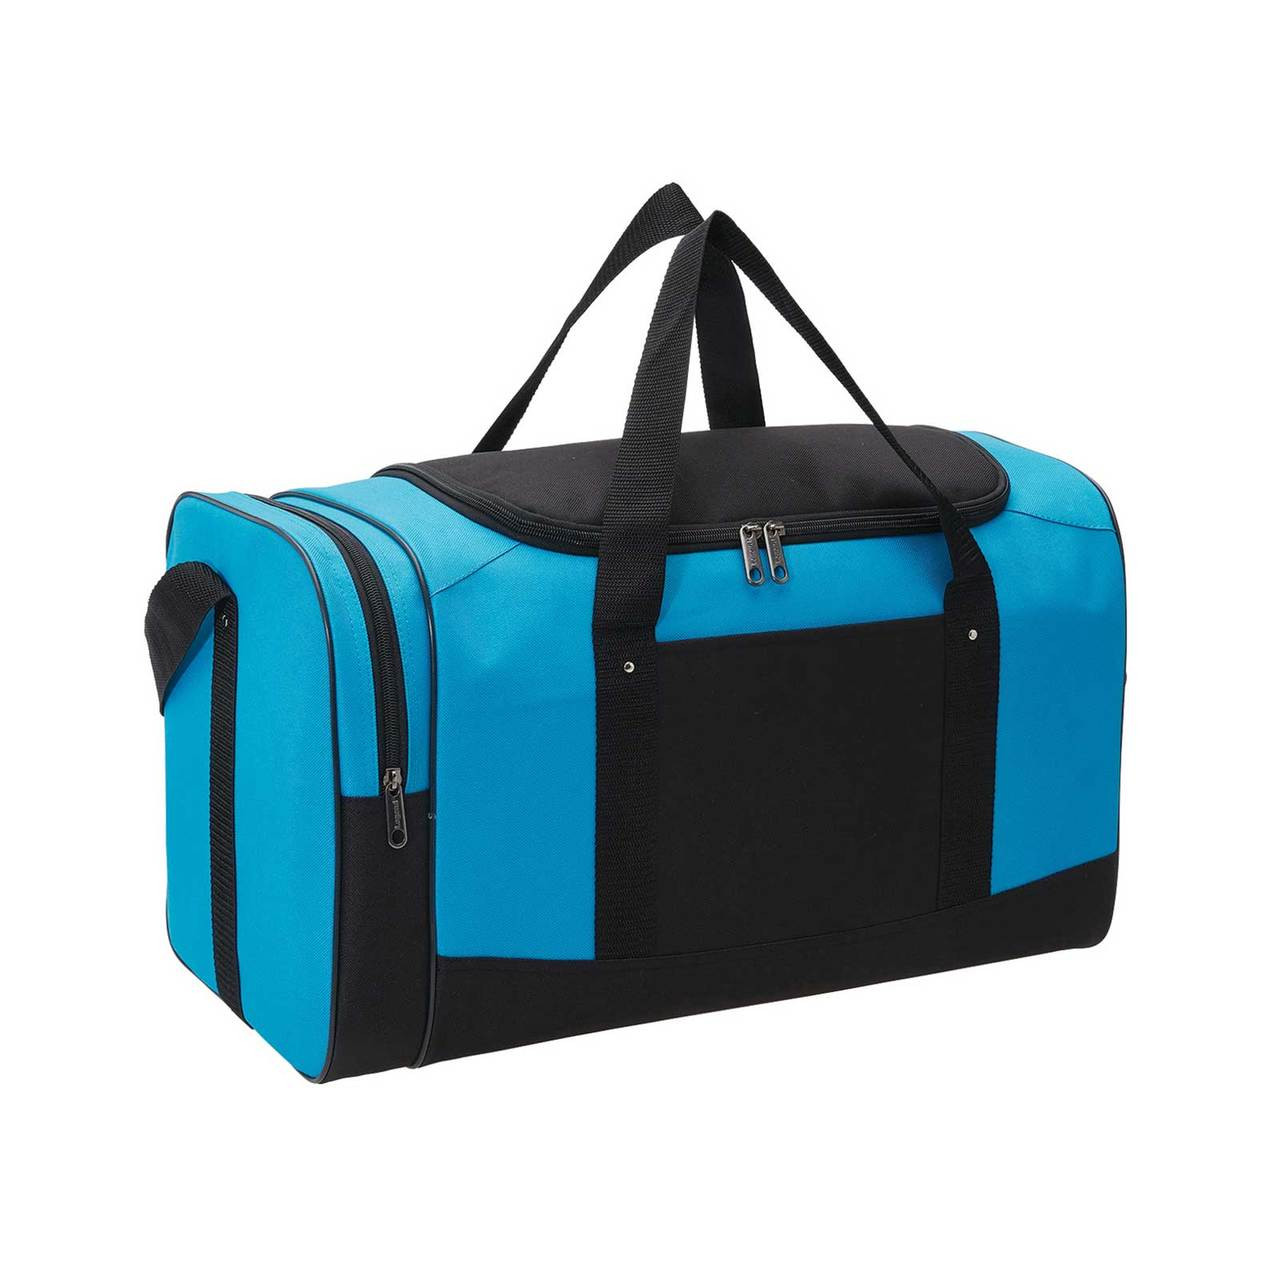 SPAR | Wholesale Duffle Sports Bag | Bulk Buy Gym Bags Online